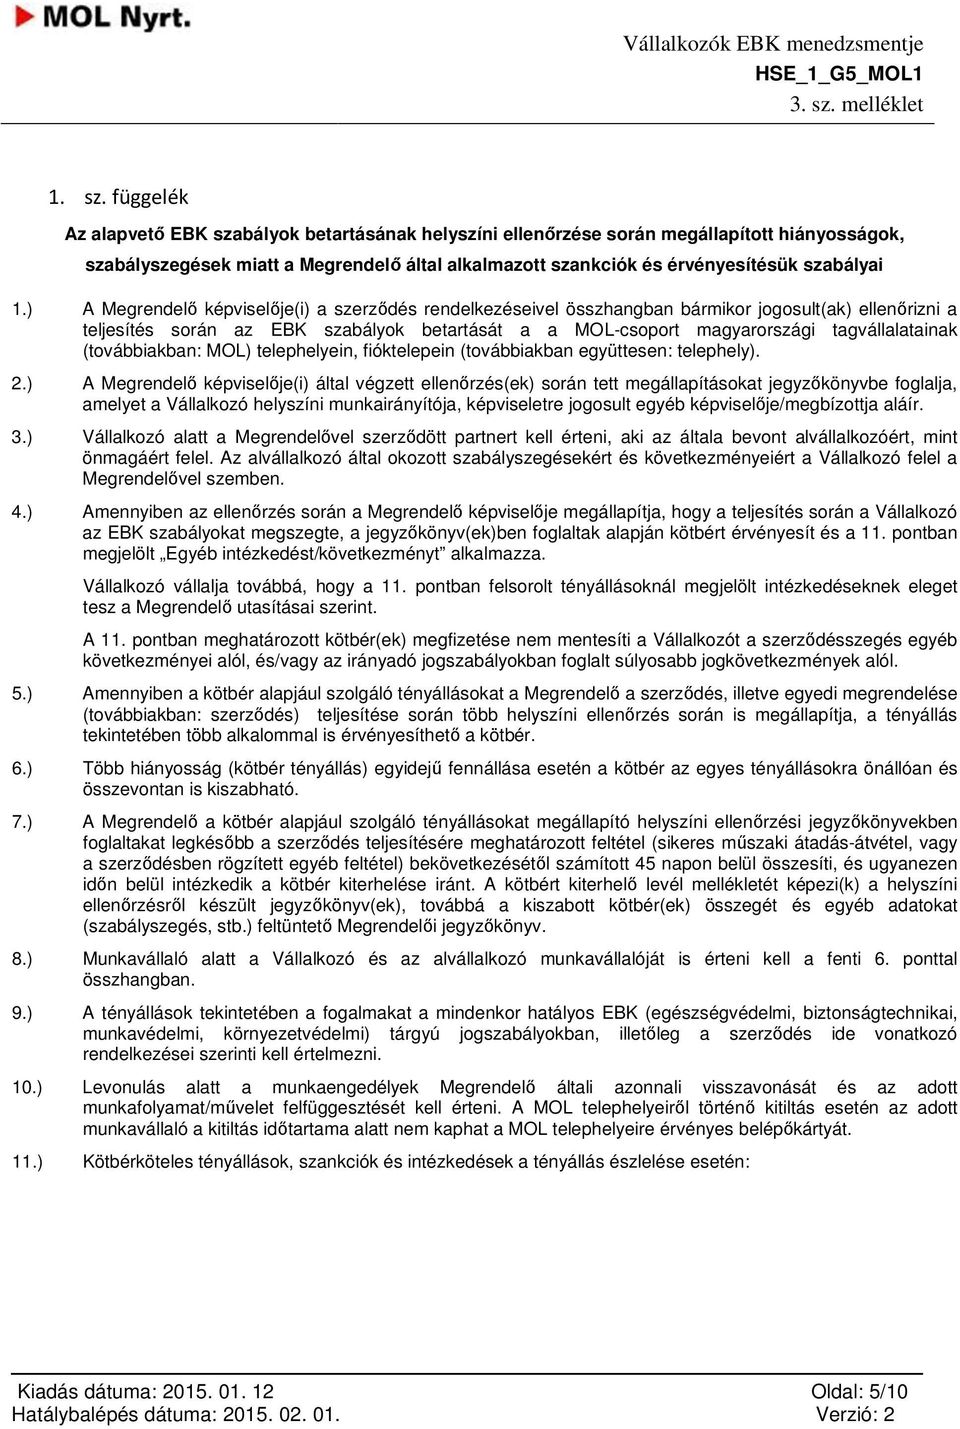 ) A Megrendelő képviselője(i) a szerződés rendelkezéseivel összhangban bármikor jogosult(ak) ellenőrizni a teljesítés során az EBK szabályok betartását a a MOL-csoport magyarországi tagvállalatainak